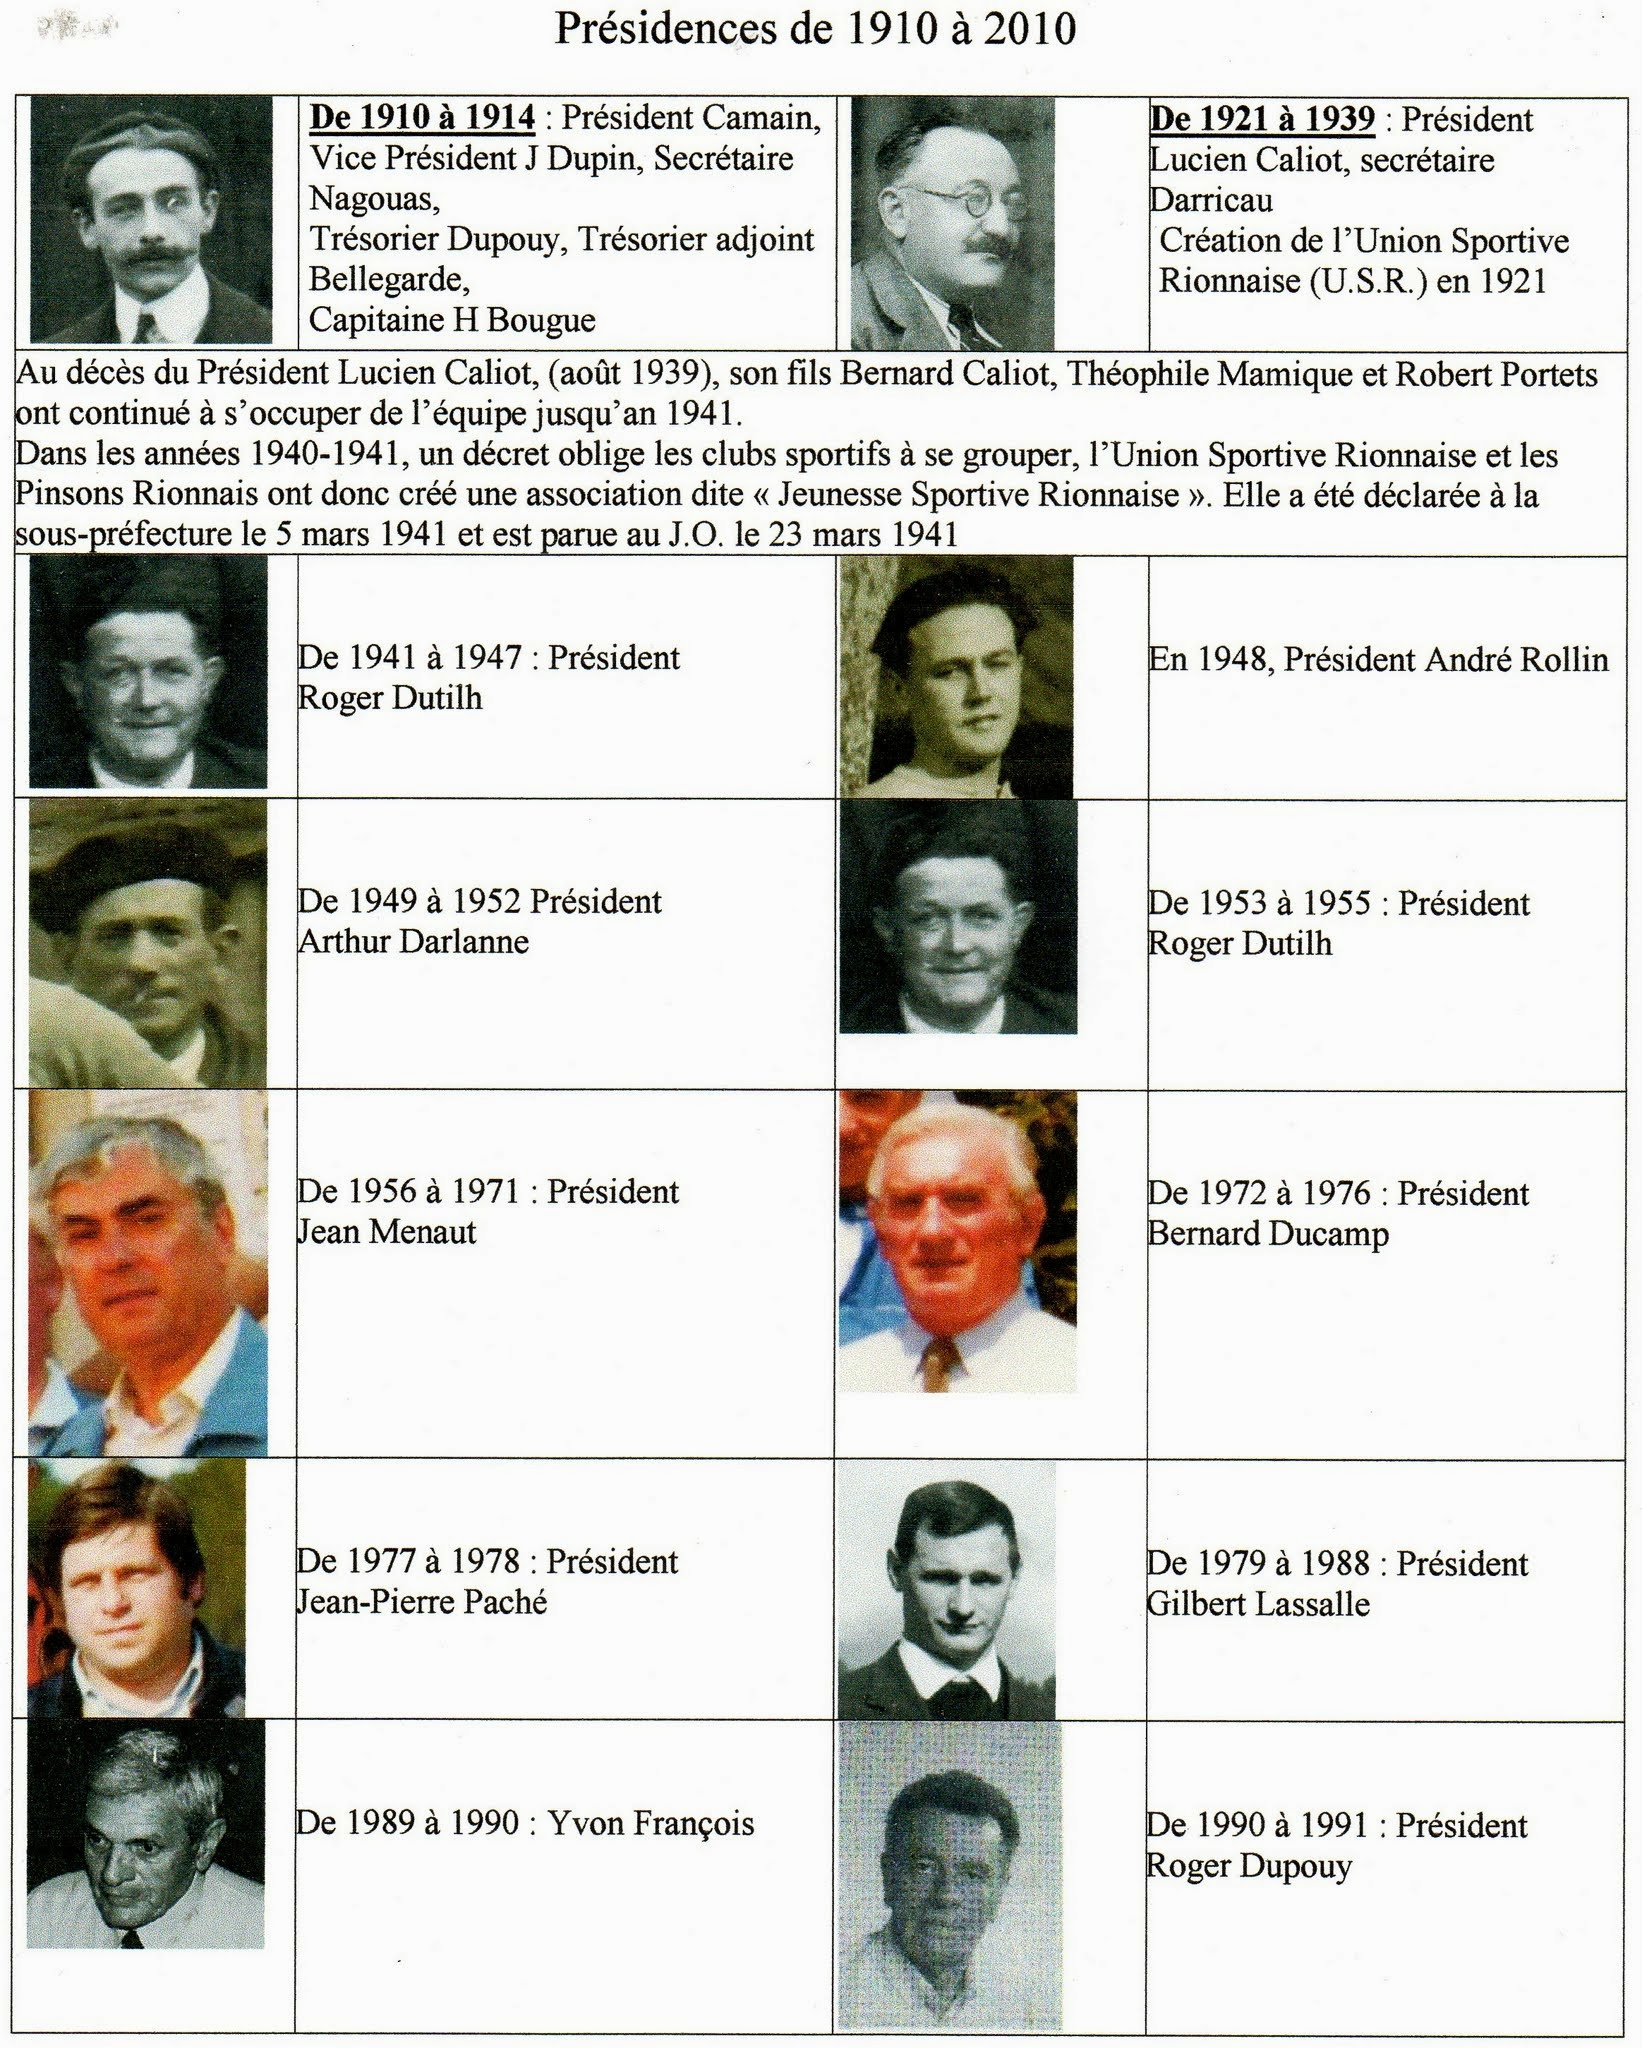 Présidences de 1910 à 2010 n°1.jpg